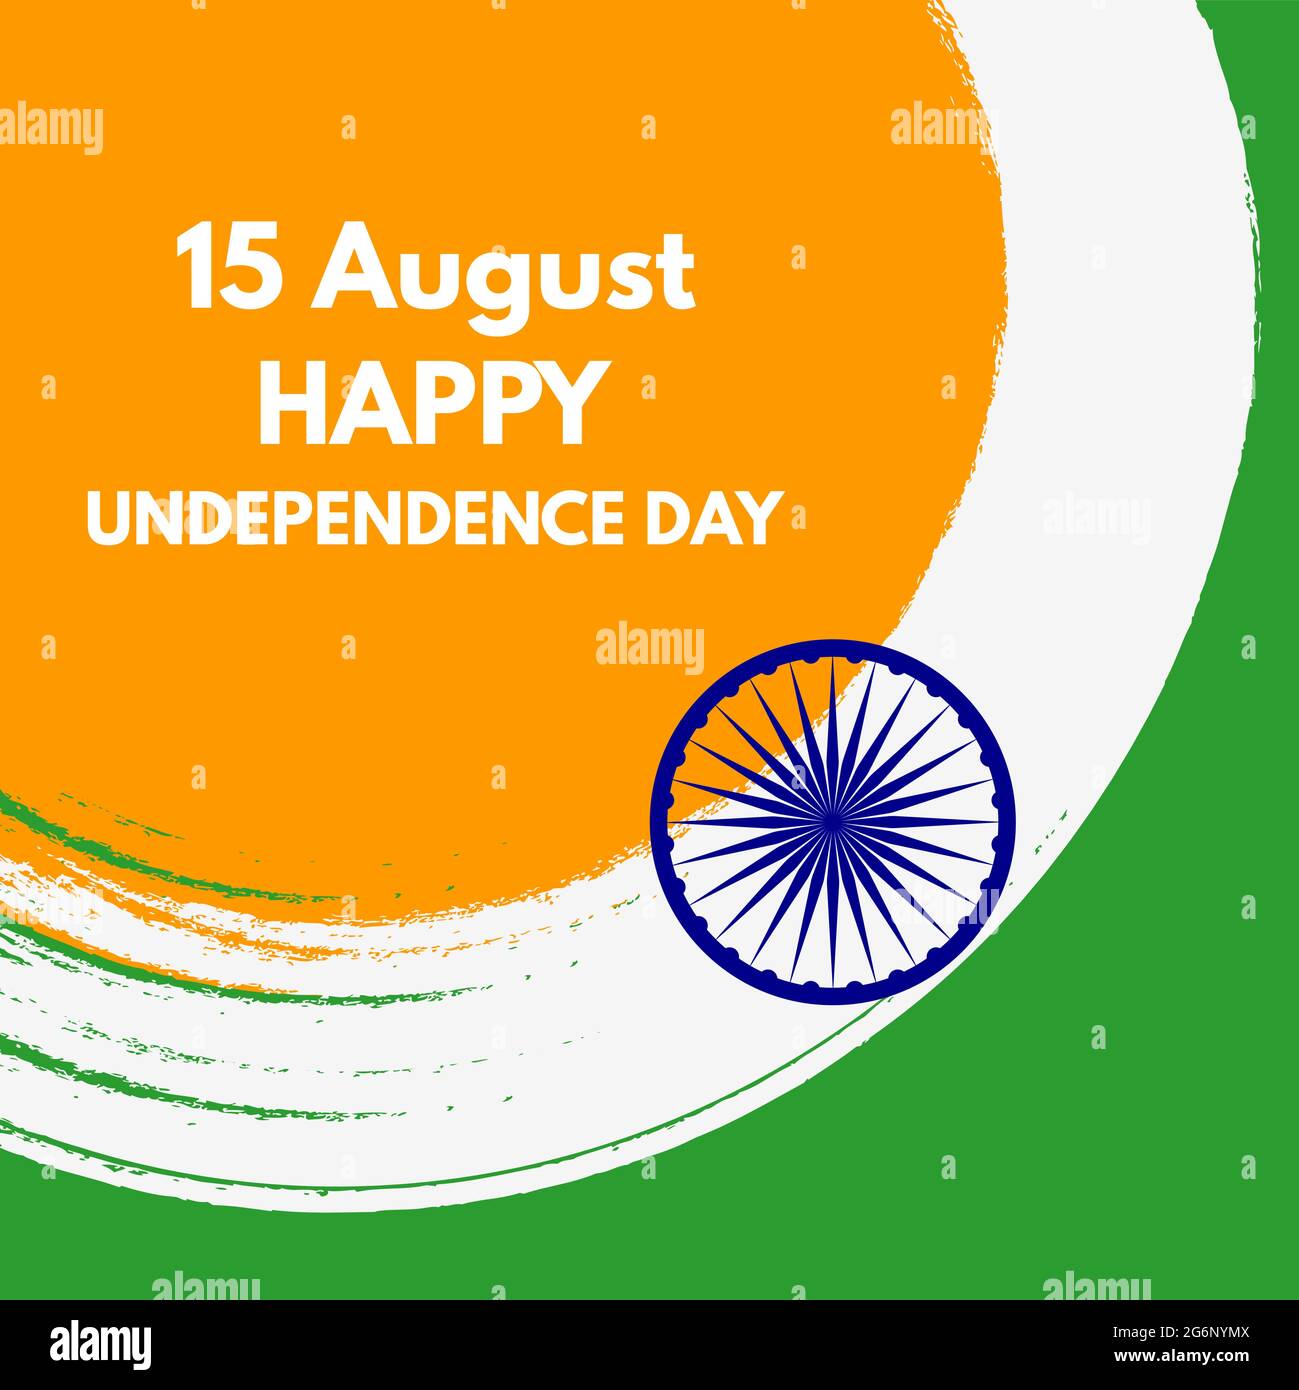 Ngày Quốc khánh độc lập Ấn Độ là một ngày lễ quan trọng đánh dấu sự phát triển và độc lập của đất nước này. Hãy xem các hoạt động tổ chức trong ngày này để trải nghiệm không khí hào hùng của người Ấn Độ.